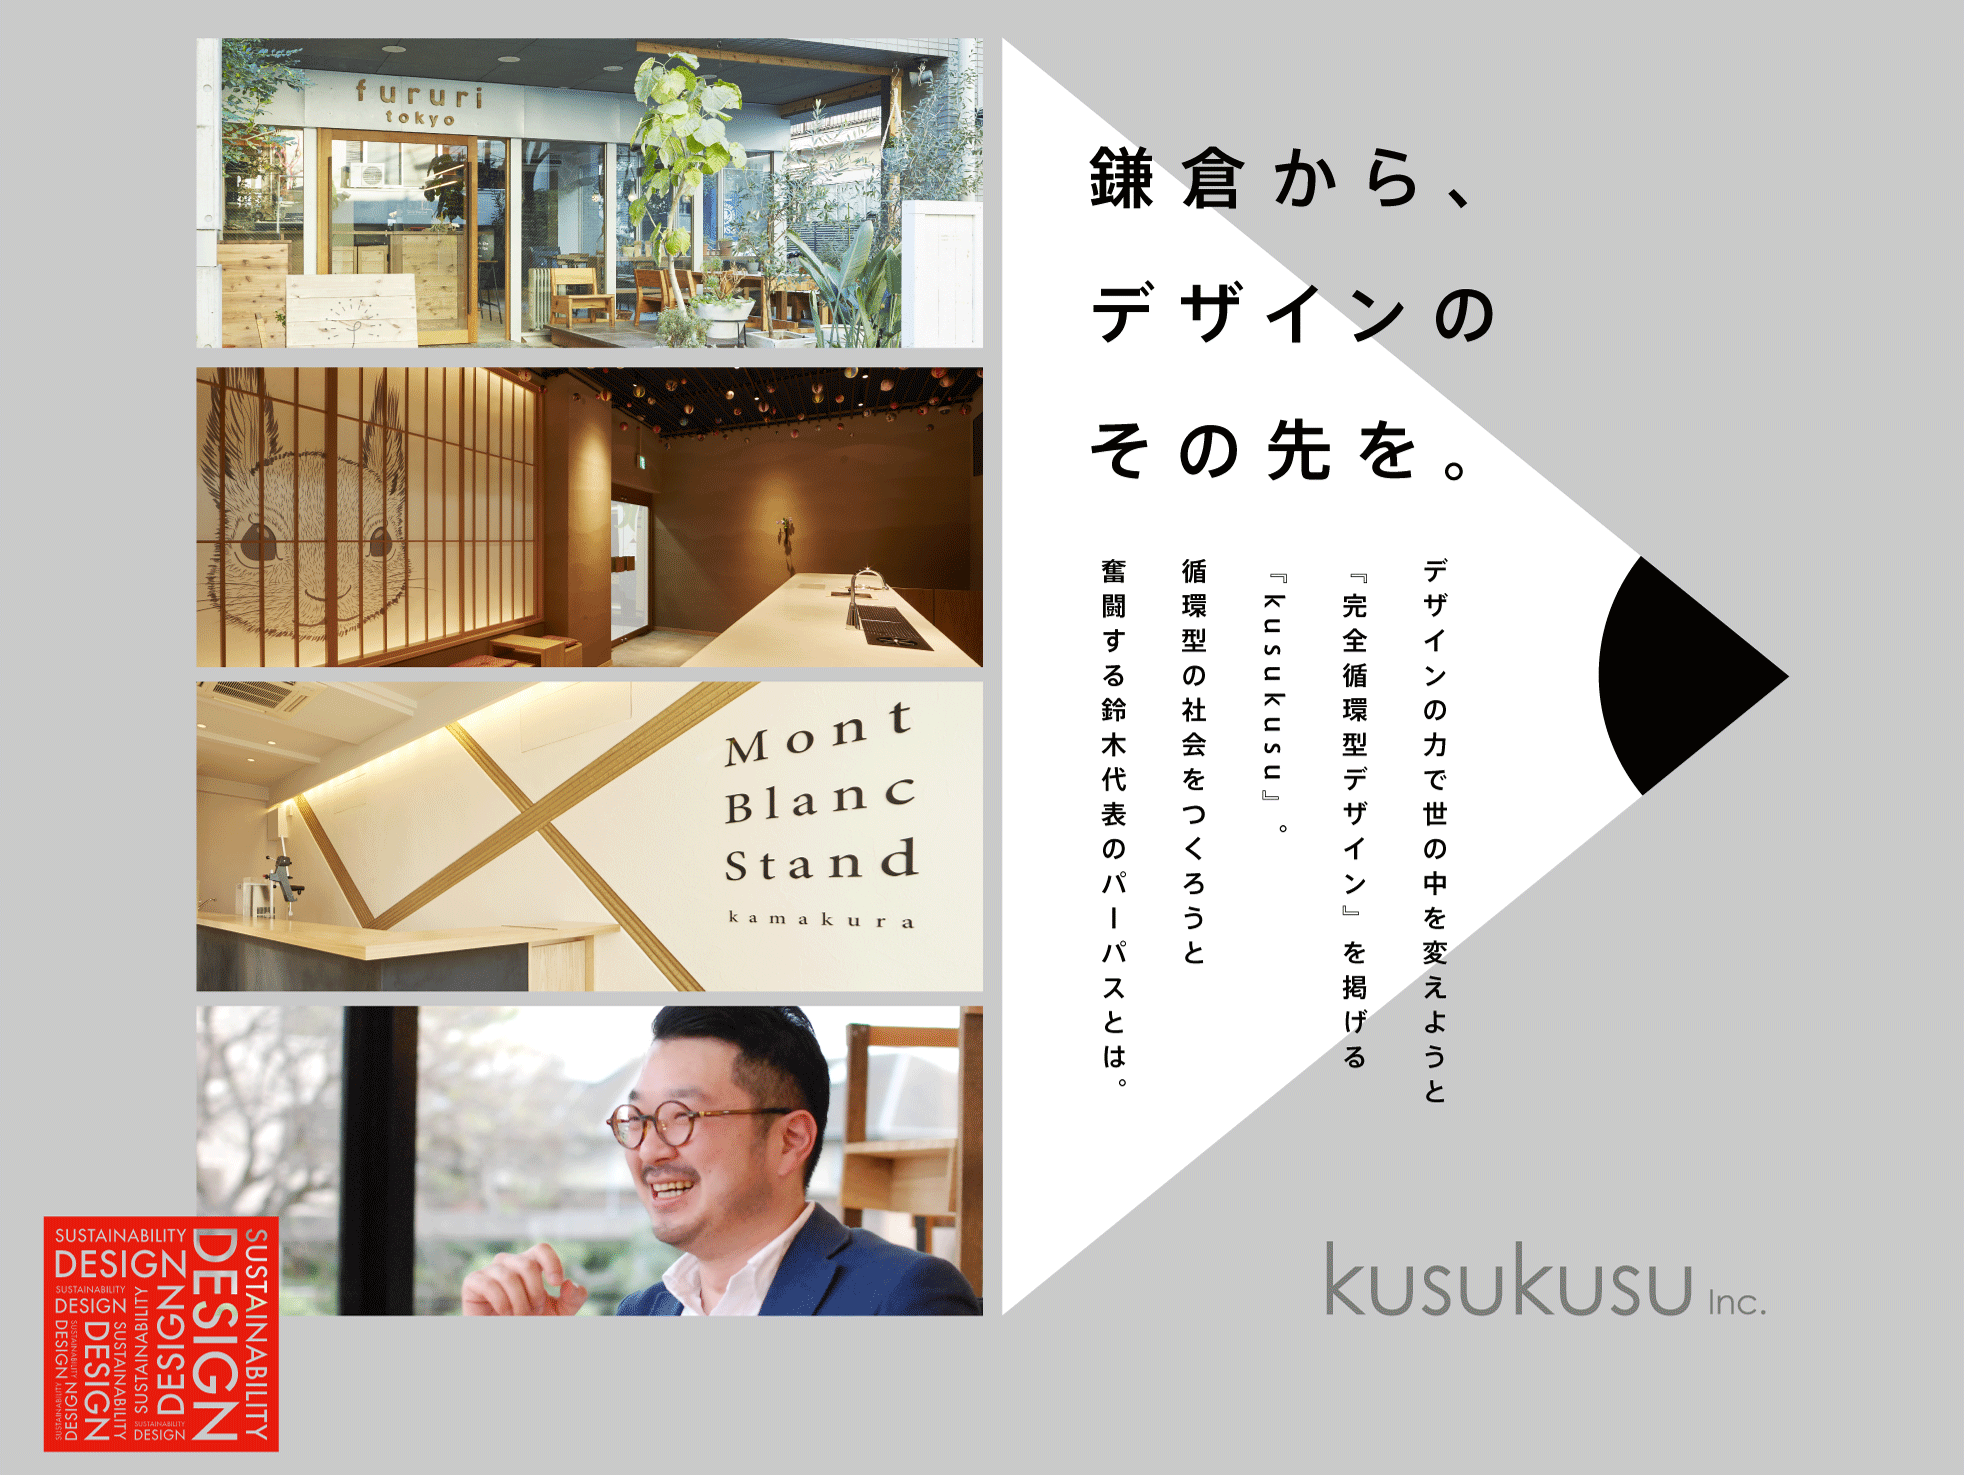 鎌倉から、デザインのその先を。デザインの力で世の中を変えようと『完全循環型デザイン』を掲げる『kusukusu』。循環型の社会をつくろうと奮闘する鈴木代表のパーパスとは。